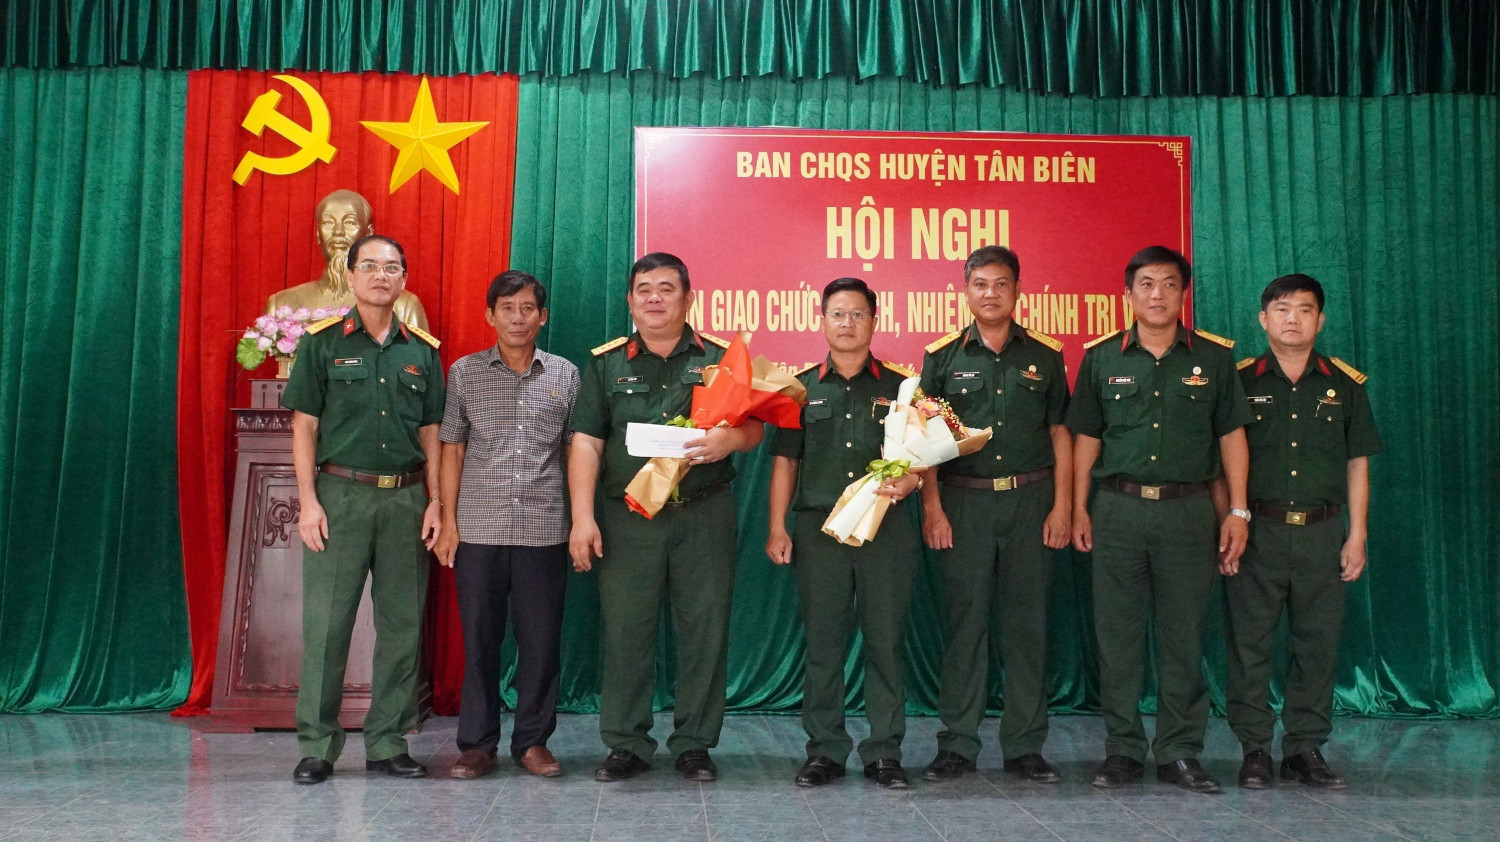 Tân Biên Bàn giao chức trách, nhiệm vụ Chính trị viên Ban Chỉ huy Quân sự huyện